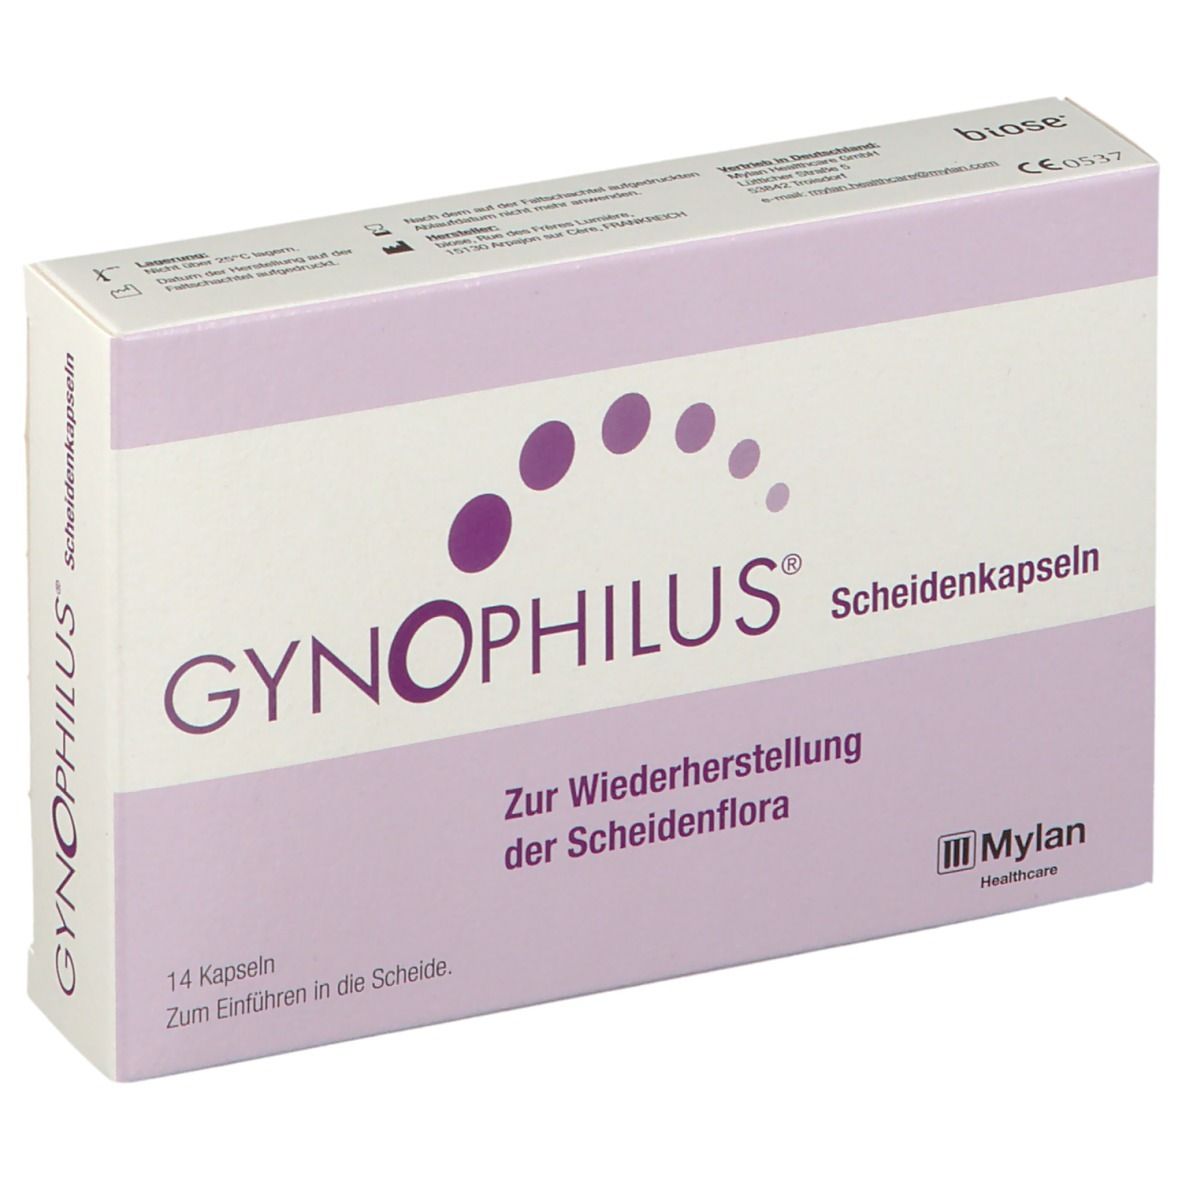 GYNOPHILUS® Scheidenkapseln